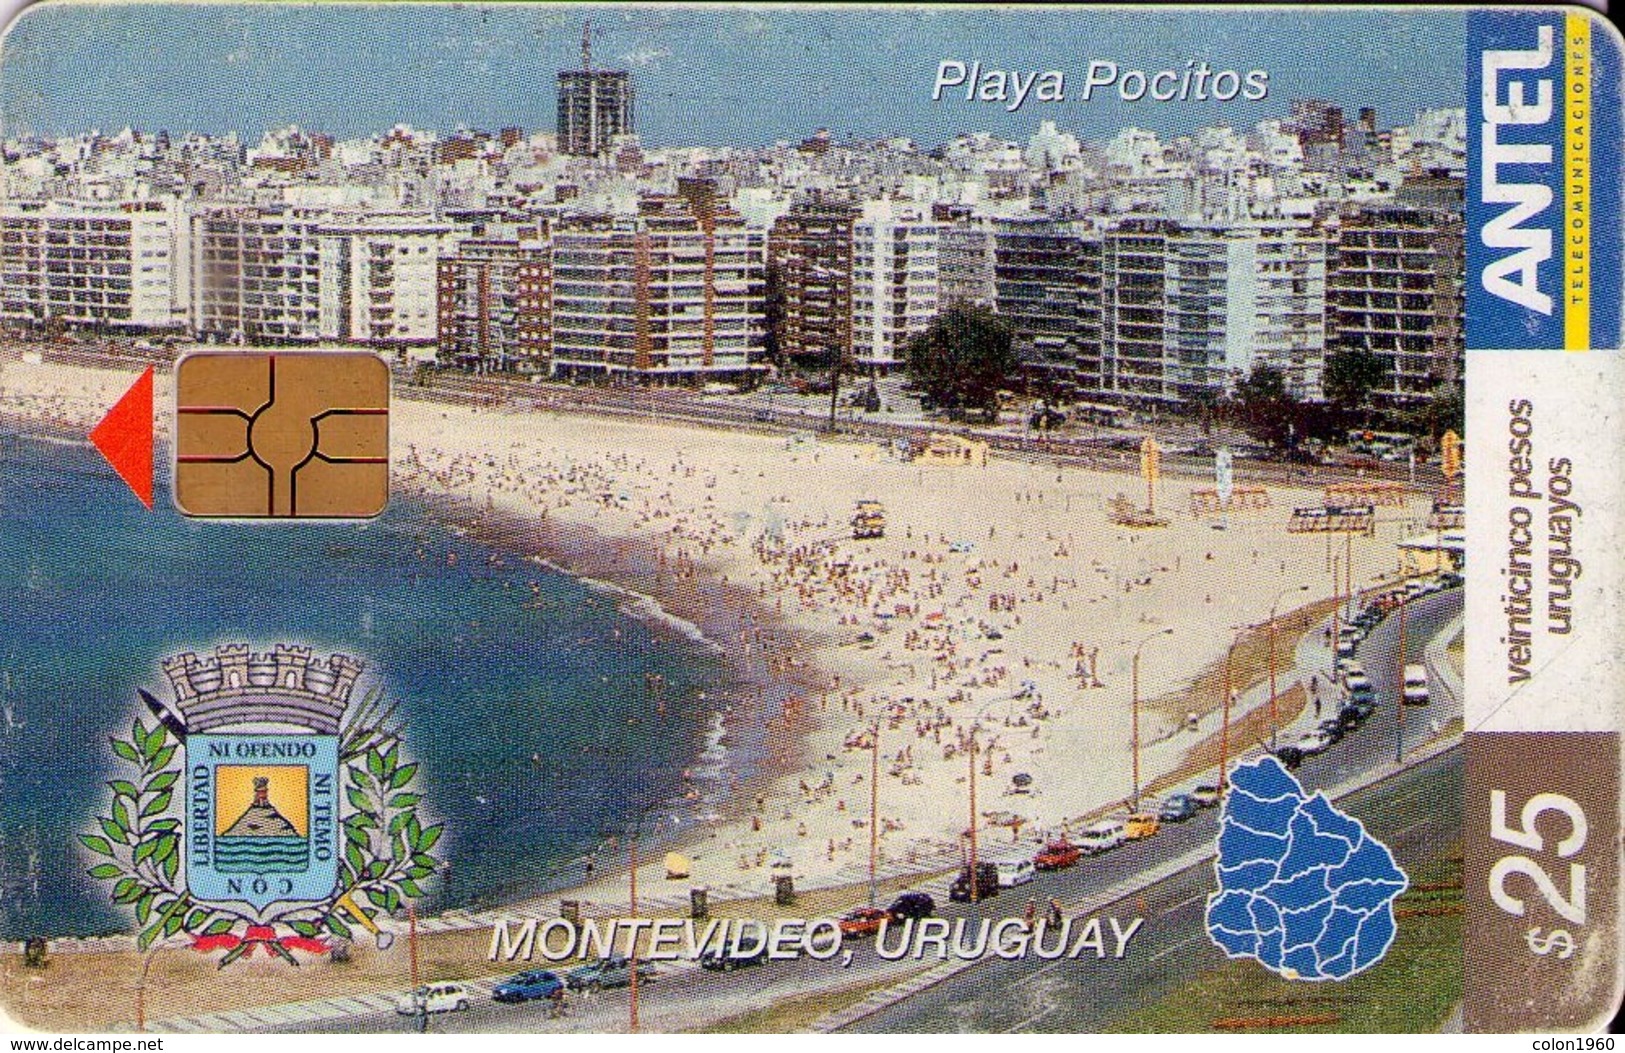 URUGUAY. 282a. PLAYA POCITOS, MONTEVIDEO. 07-2003. (269) - Uruguay